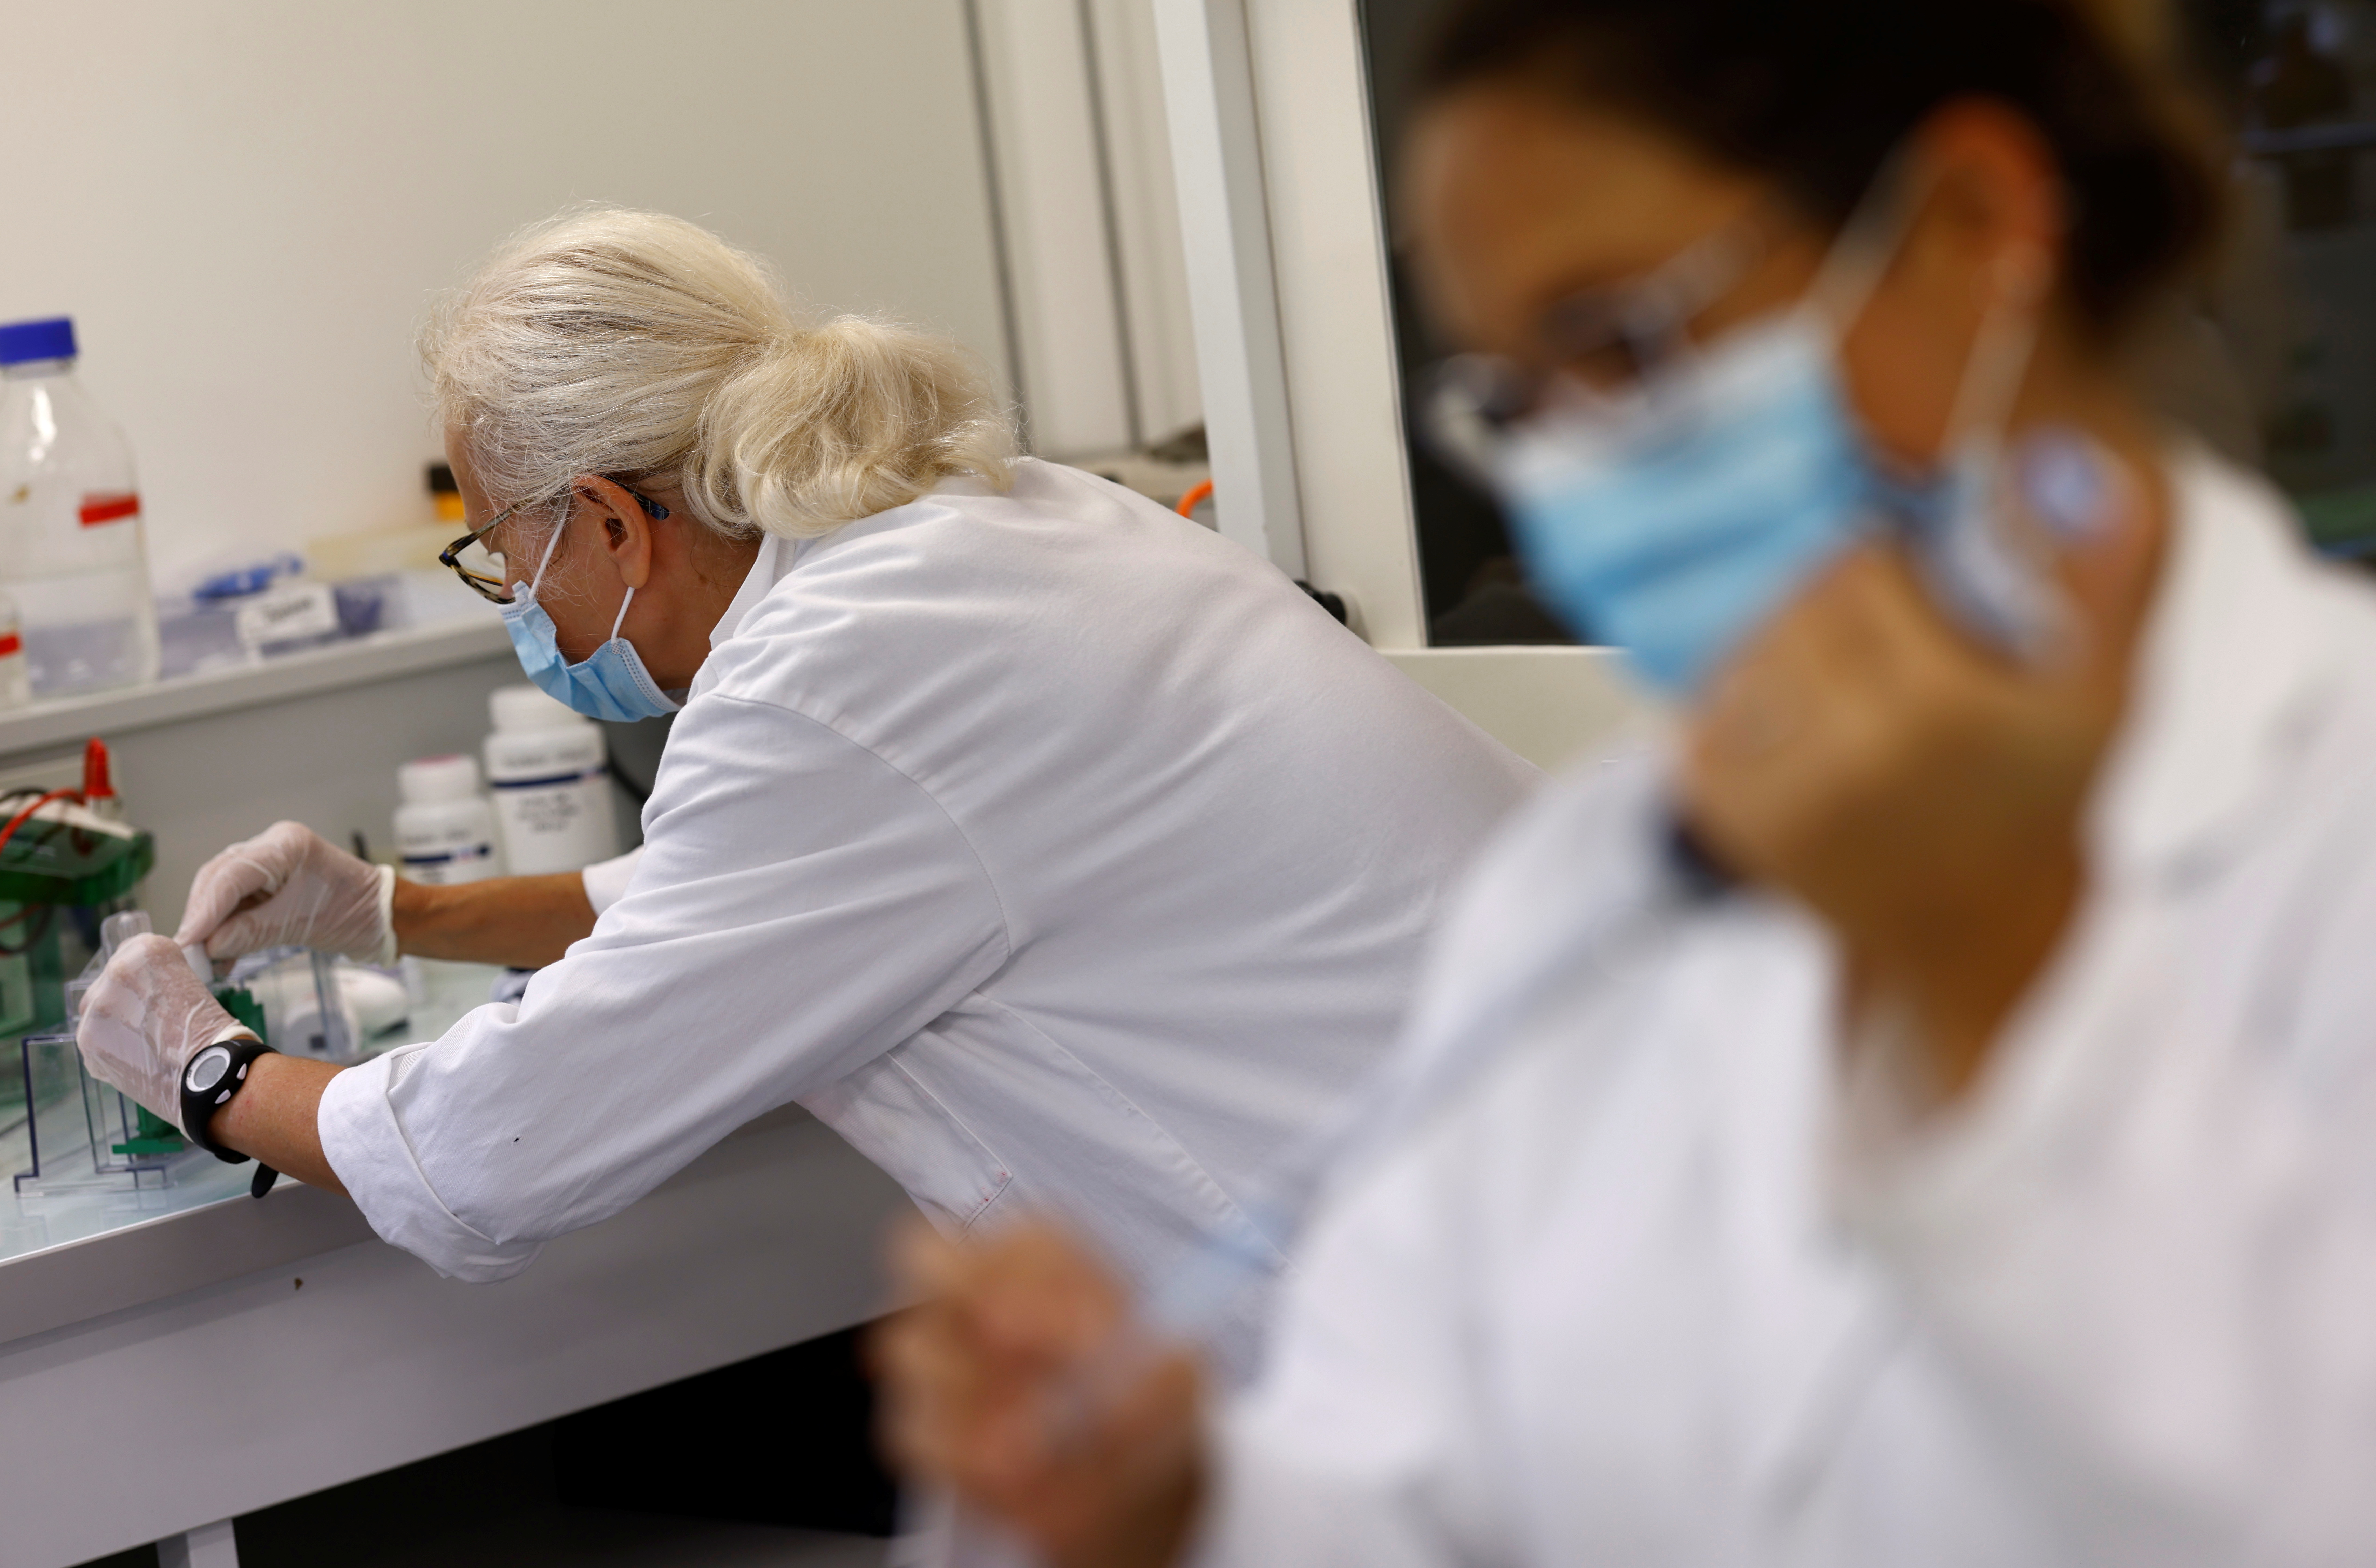 Des chercheurs travaillent en laboratoire dans le cadre d'un projet de développement d'un vaccin en spray nasal Covid qui pourrait protéger contre la maladie à coronavirus (COVID-19), à l'Université de Tours, France, le 15 septembre 2021. REUTERS/Stephane Mahe